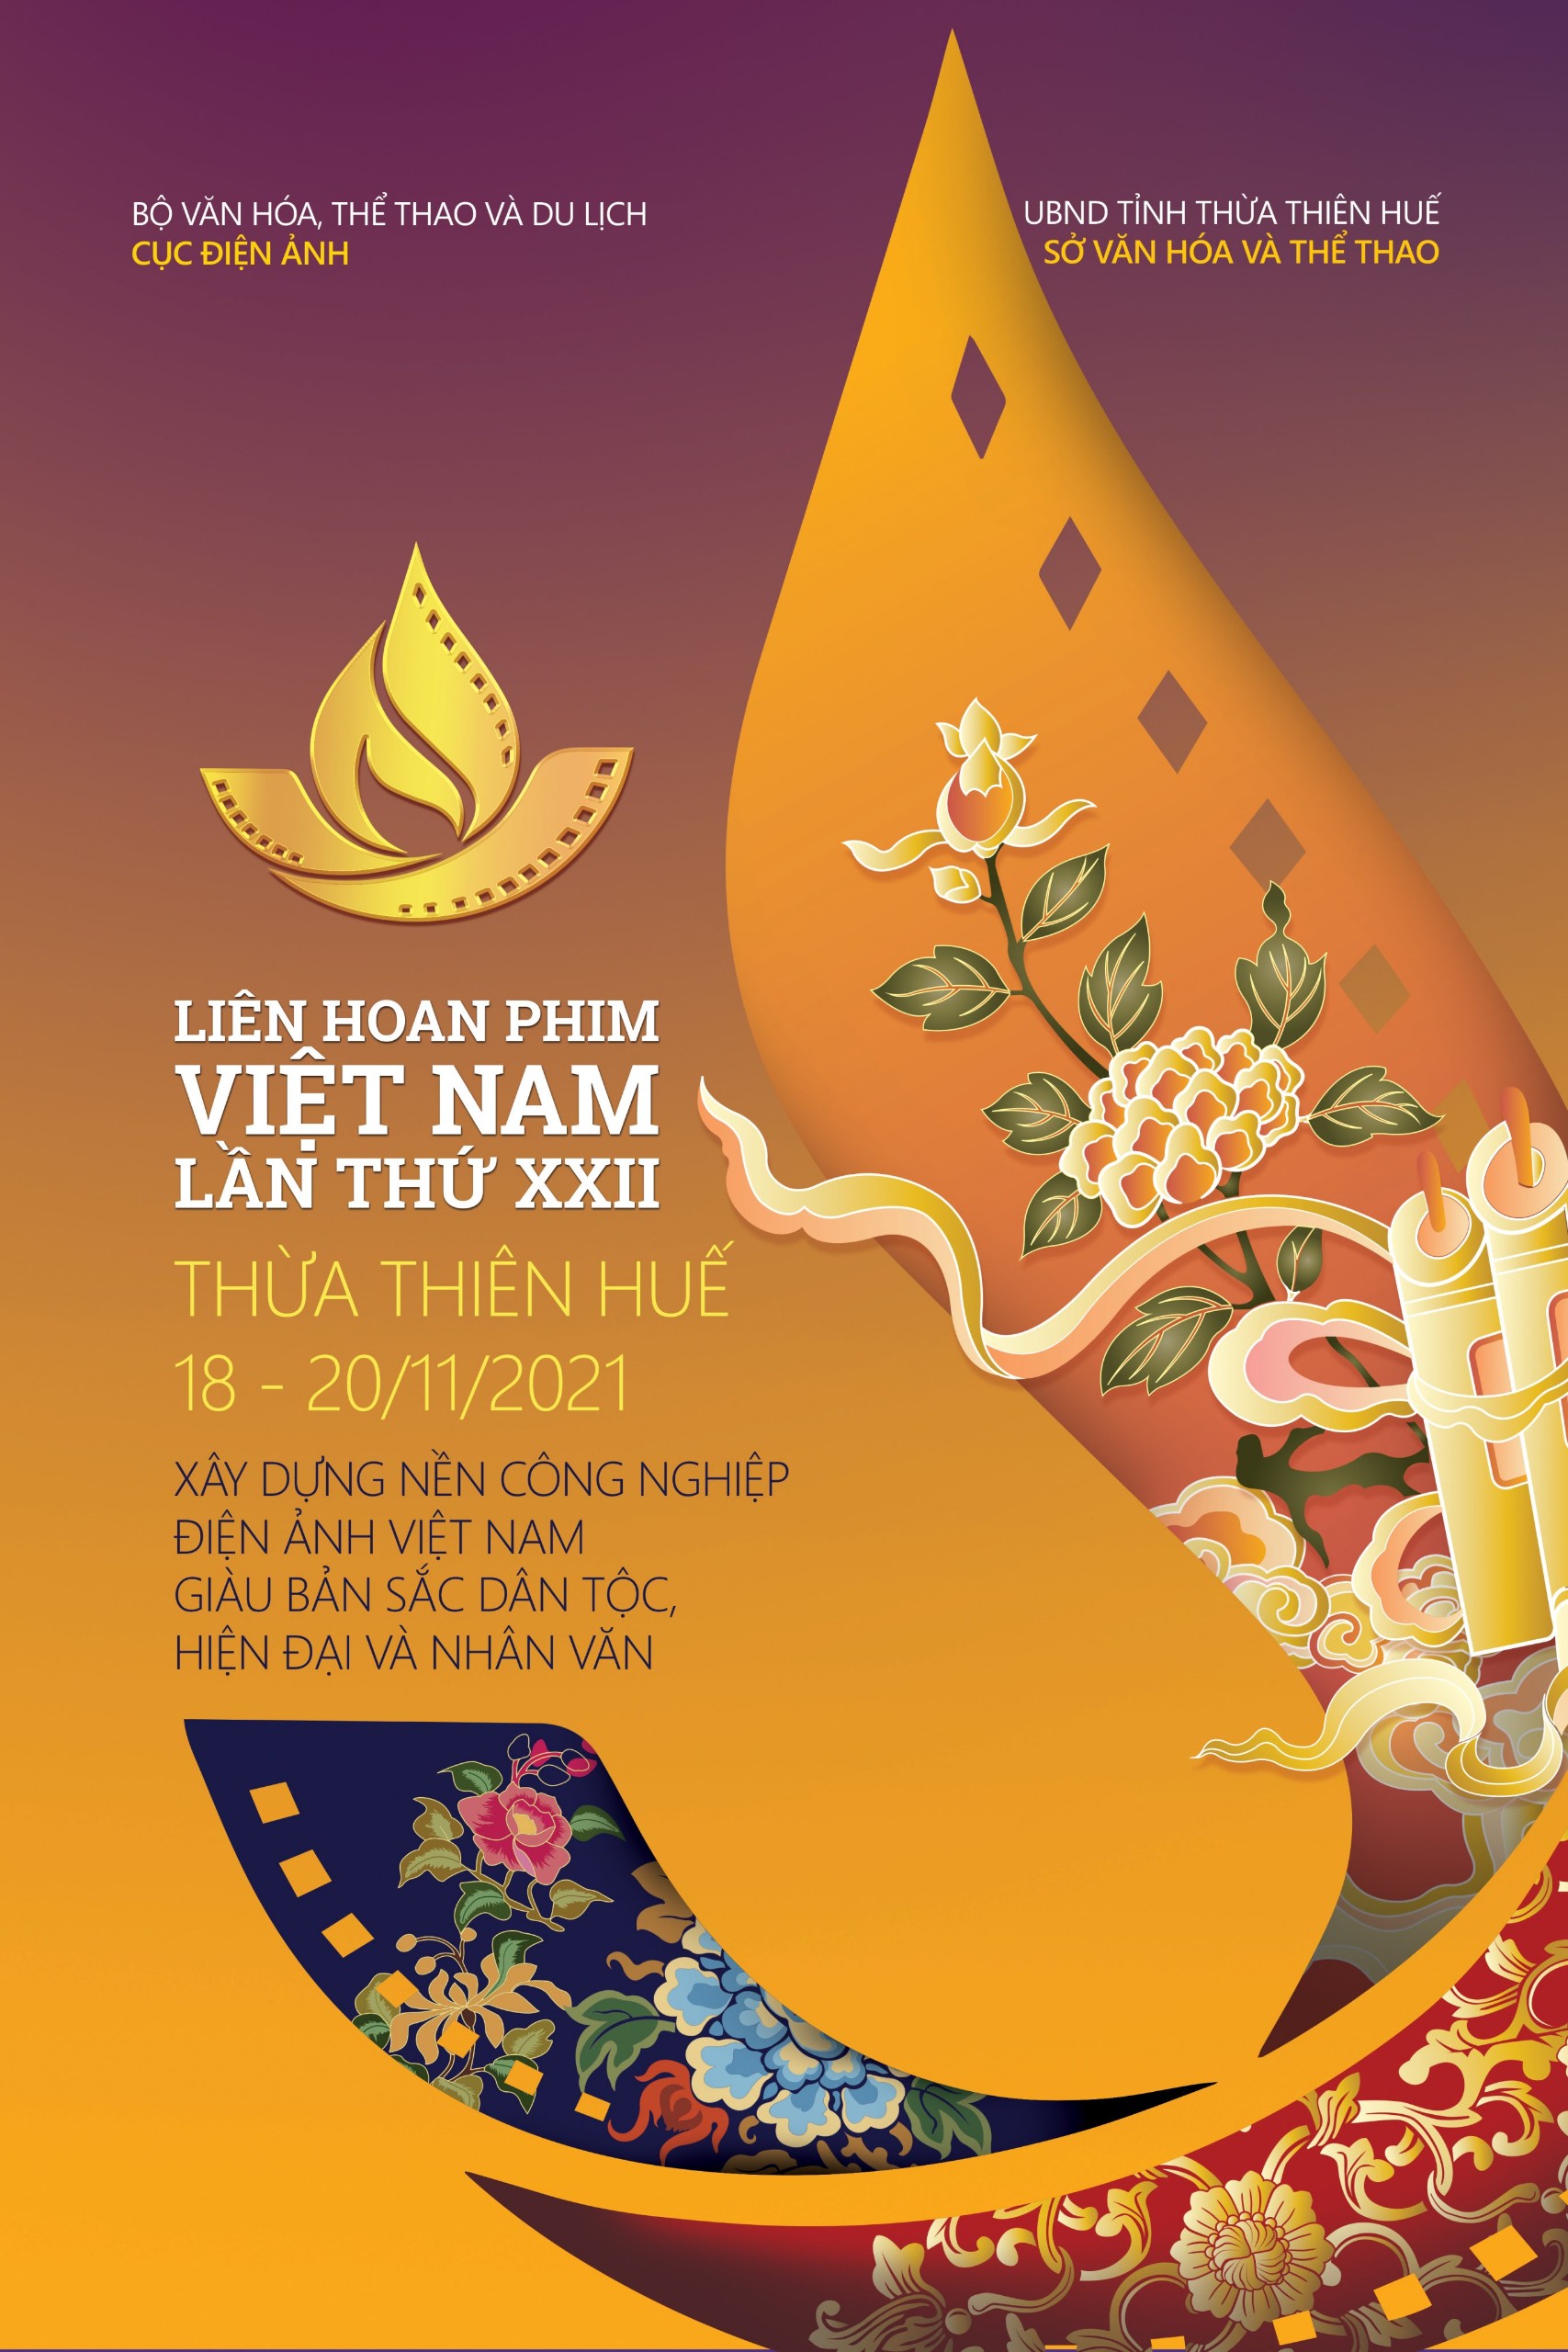 Tổng hợp thông tin về cục điện ảnh Việt Nam , địa chỉ, hotline, website